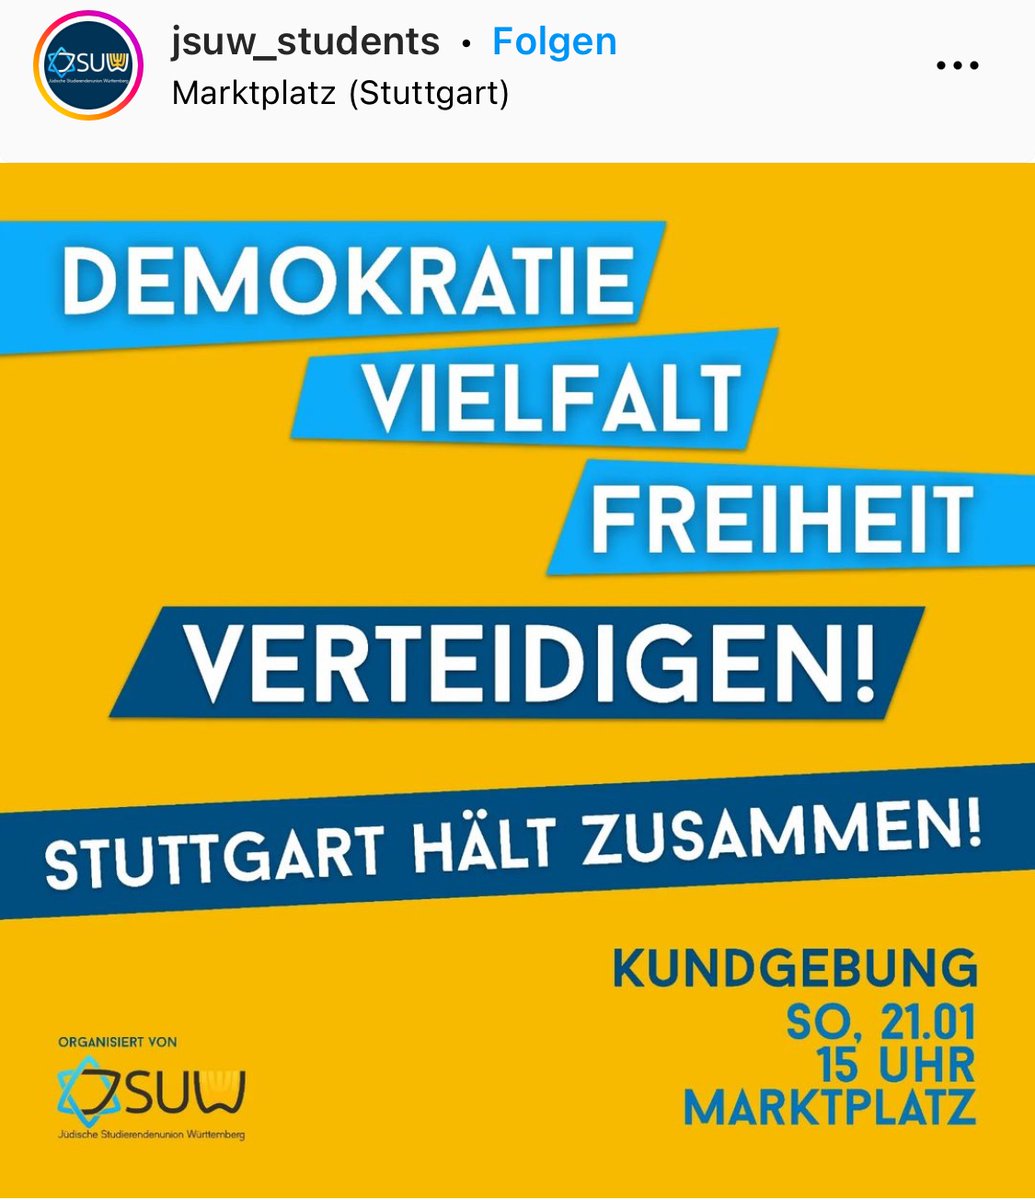 Bitte Repost: Die Jüdische Studierenden-Union Württemberg (#JSUW) ruft am Sonntag, 21.01.24 - dem Tag der Migrantinnen & Geflüchteten - um 15 Uhr auf den #Marktplatz in #Stuttgart zur #Demonstration gegen #Faschismus und #Deportationen. Auch ich werde sprechen. Sehen wir uns?